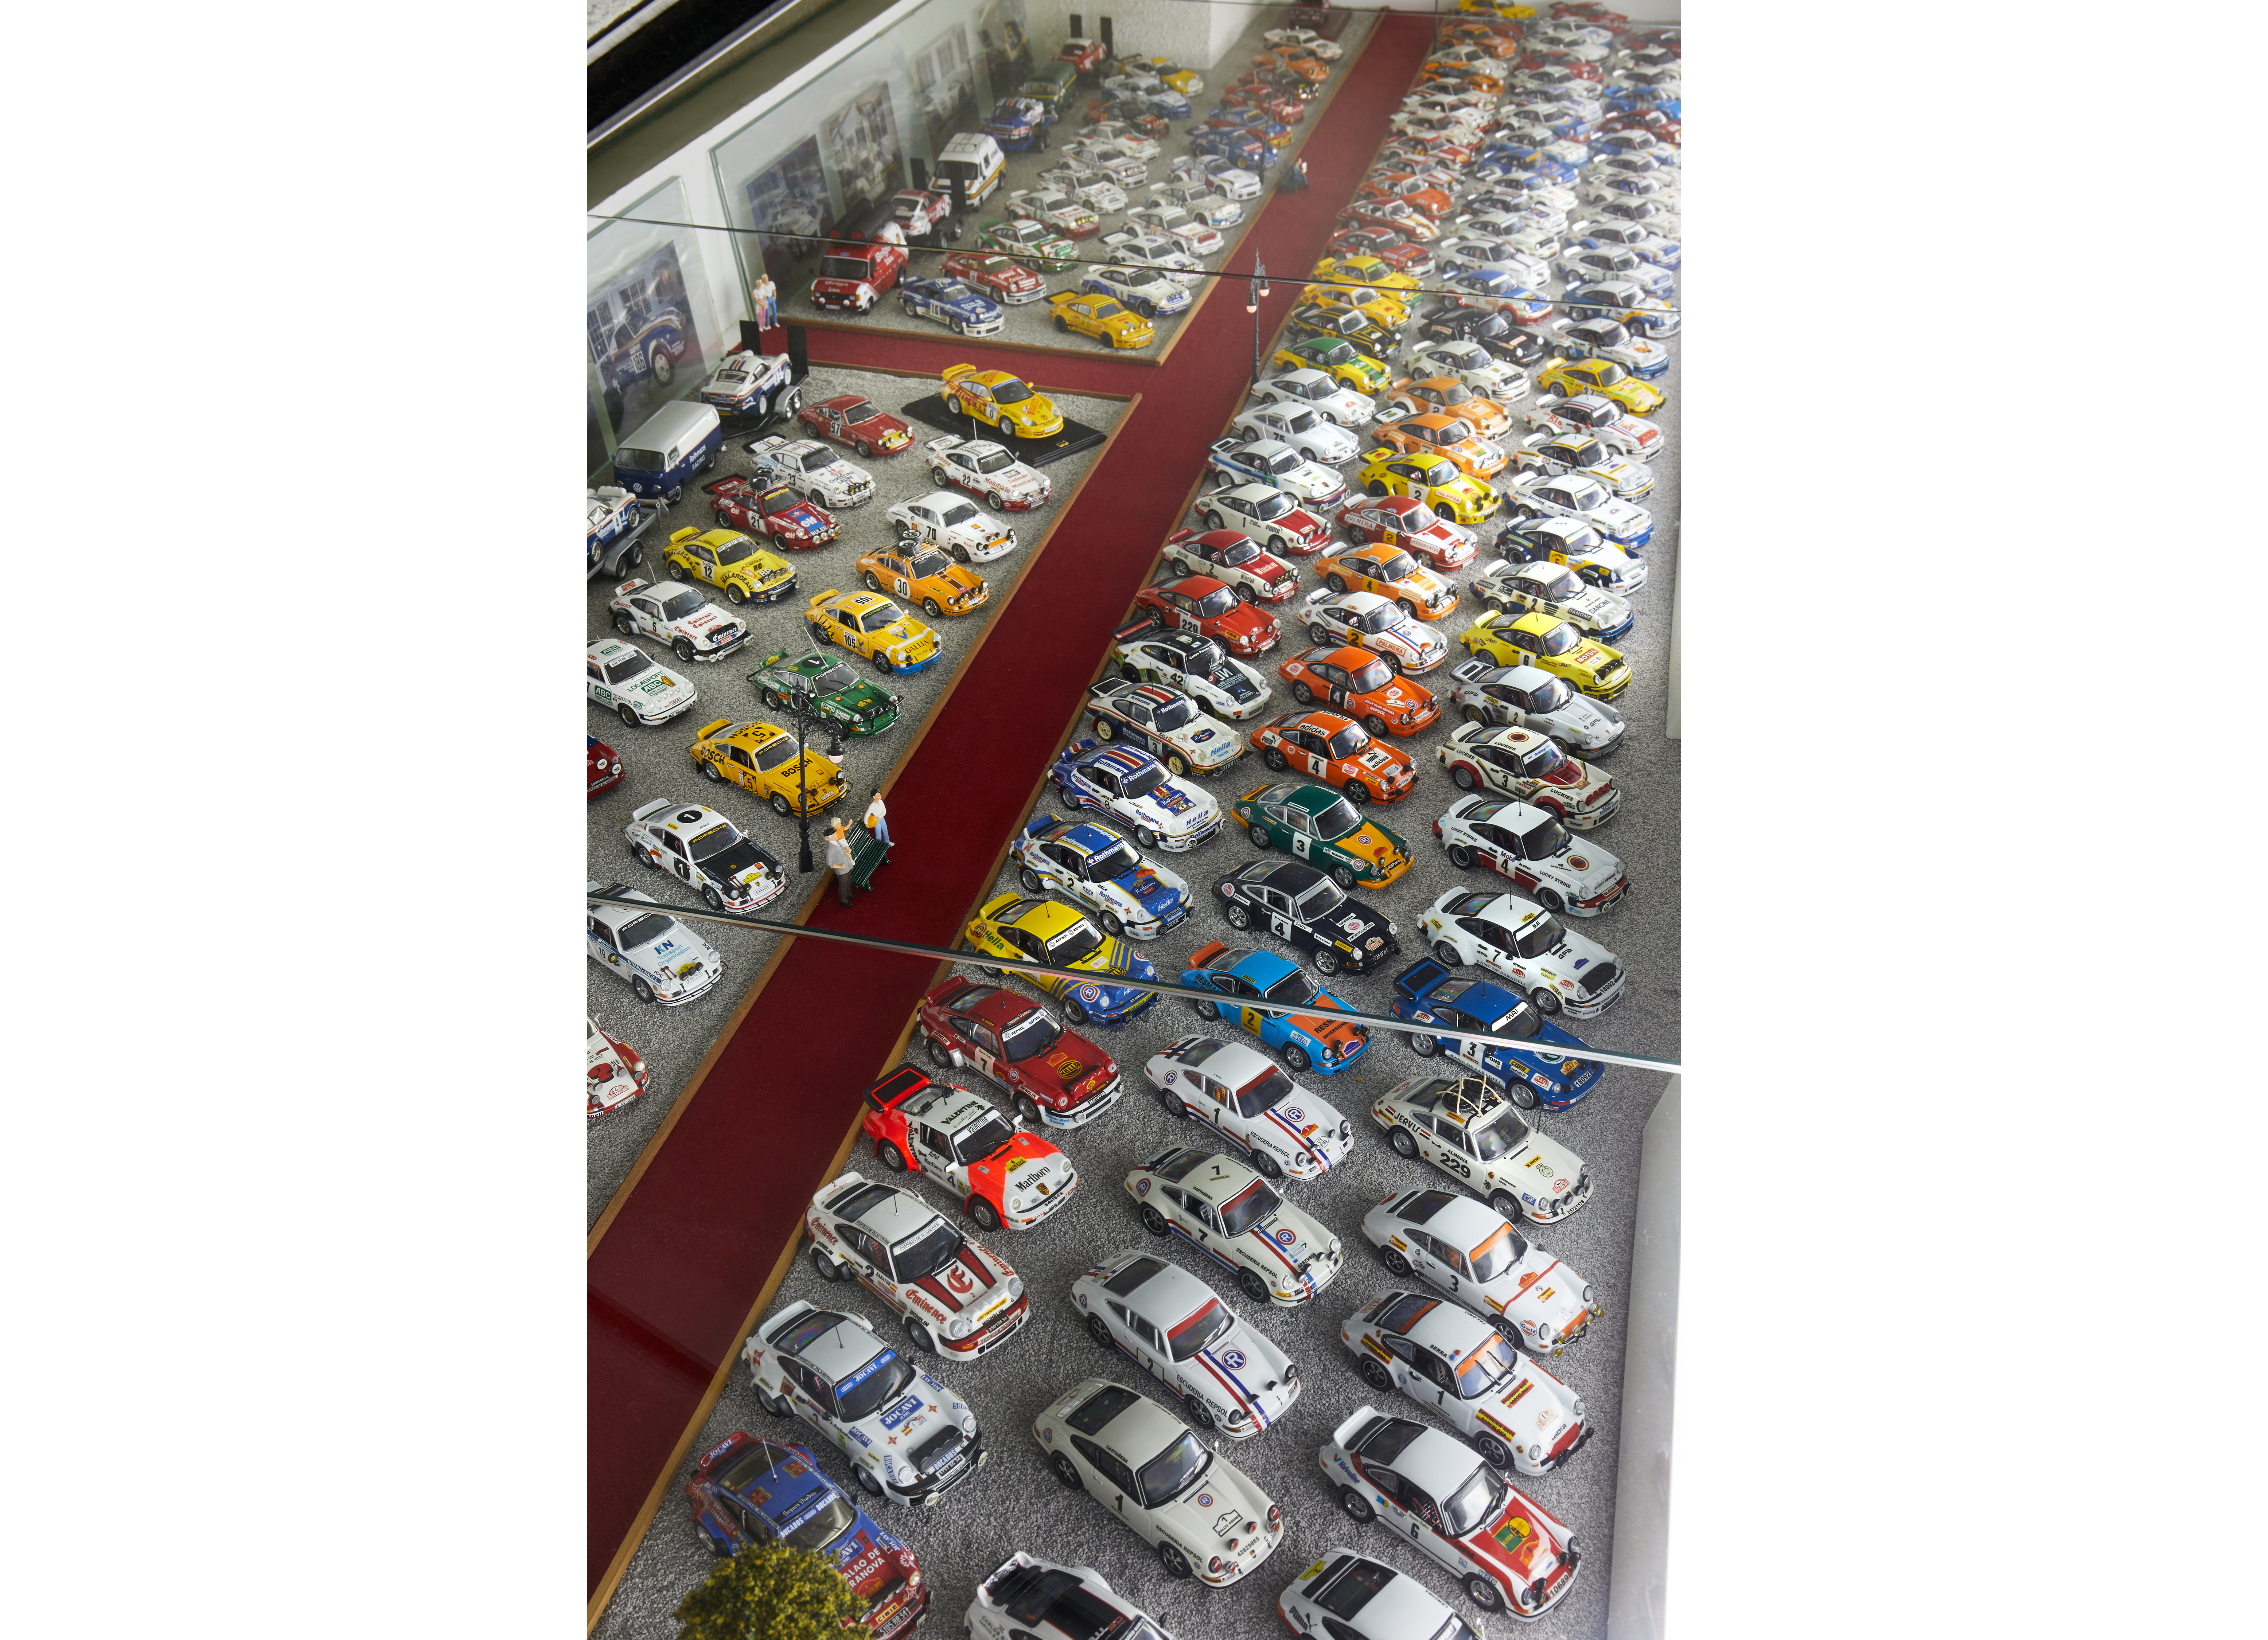 Sammlung eines Porsche-Fans, 2020, Porsche Ibérica